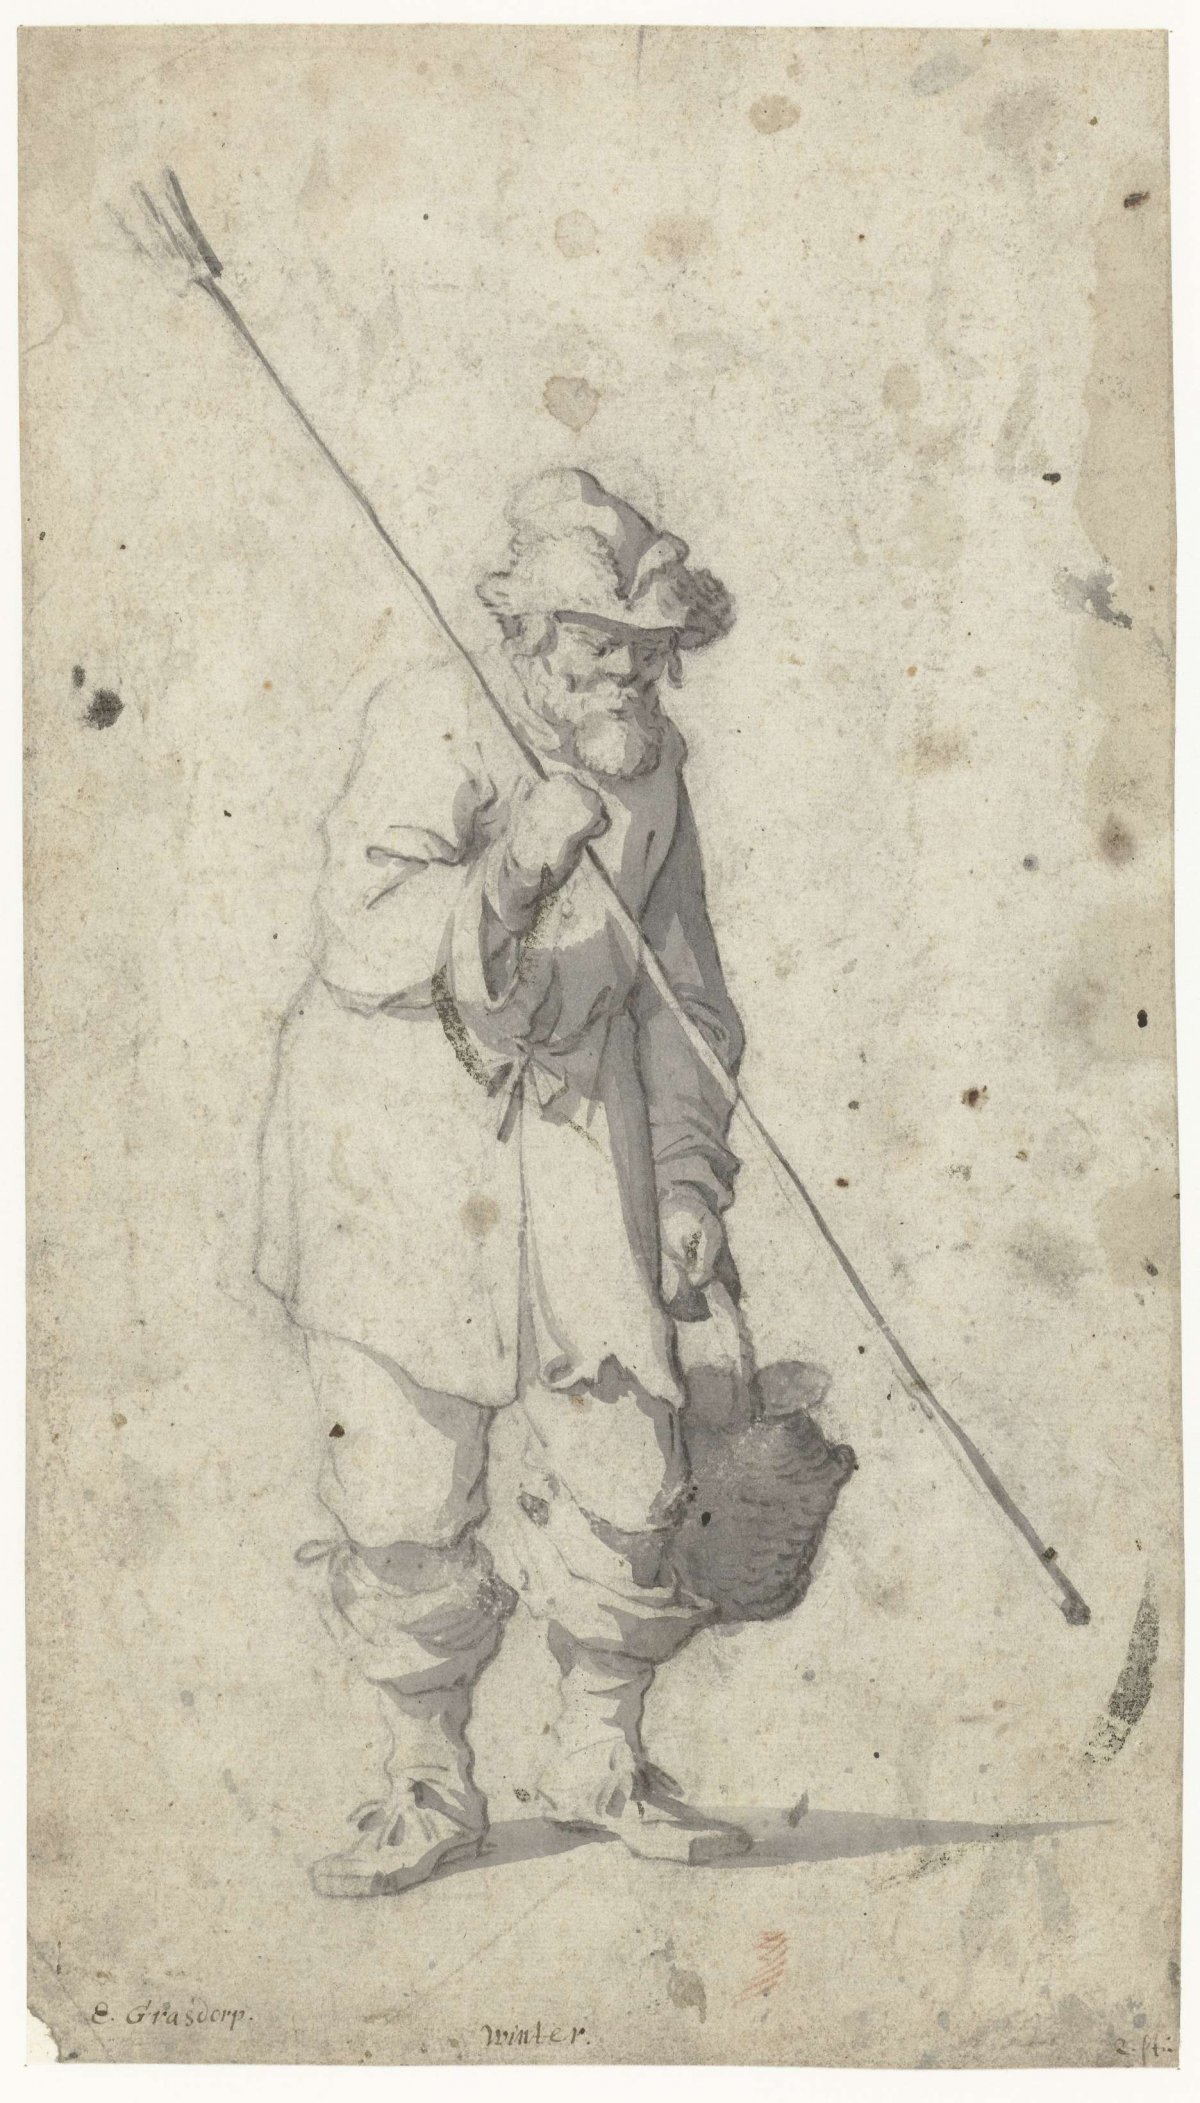 Winter, Gerrit Grasdorp, 1661 - 1693